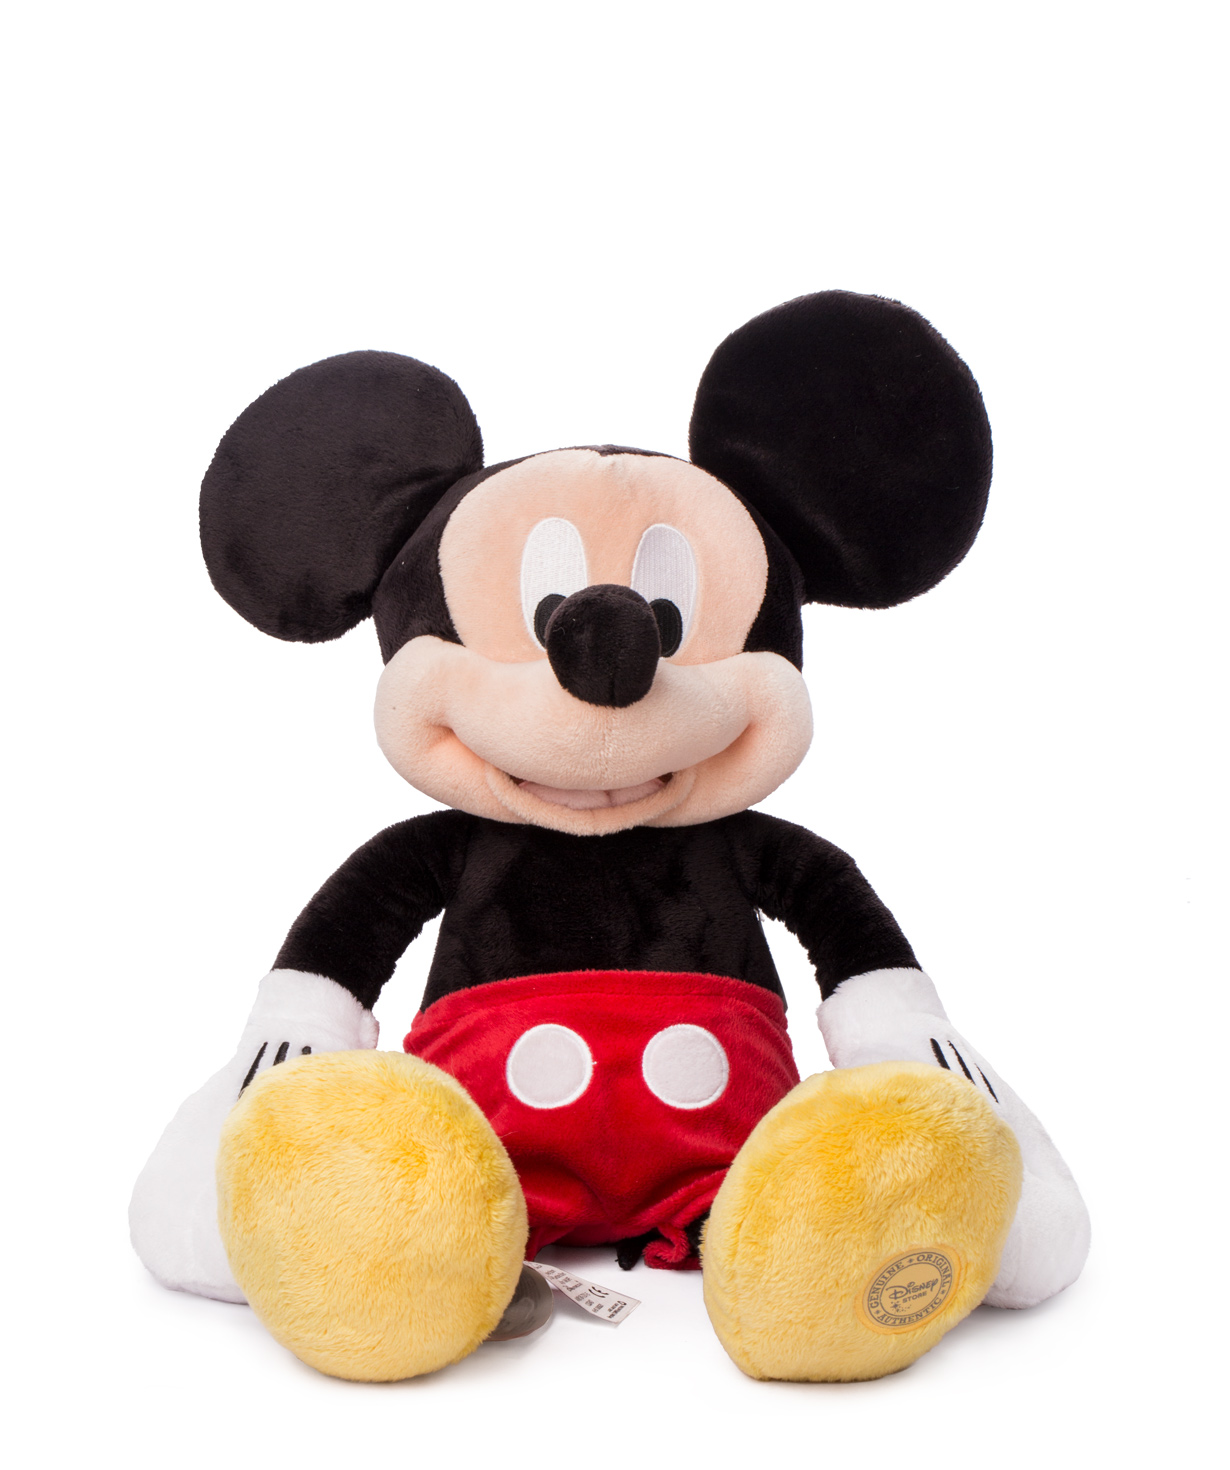 Игрушка Мики Маус плюшевая, Disney